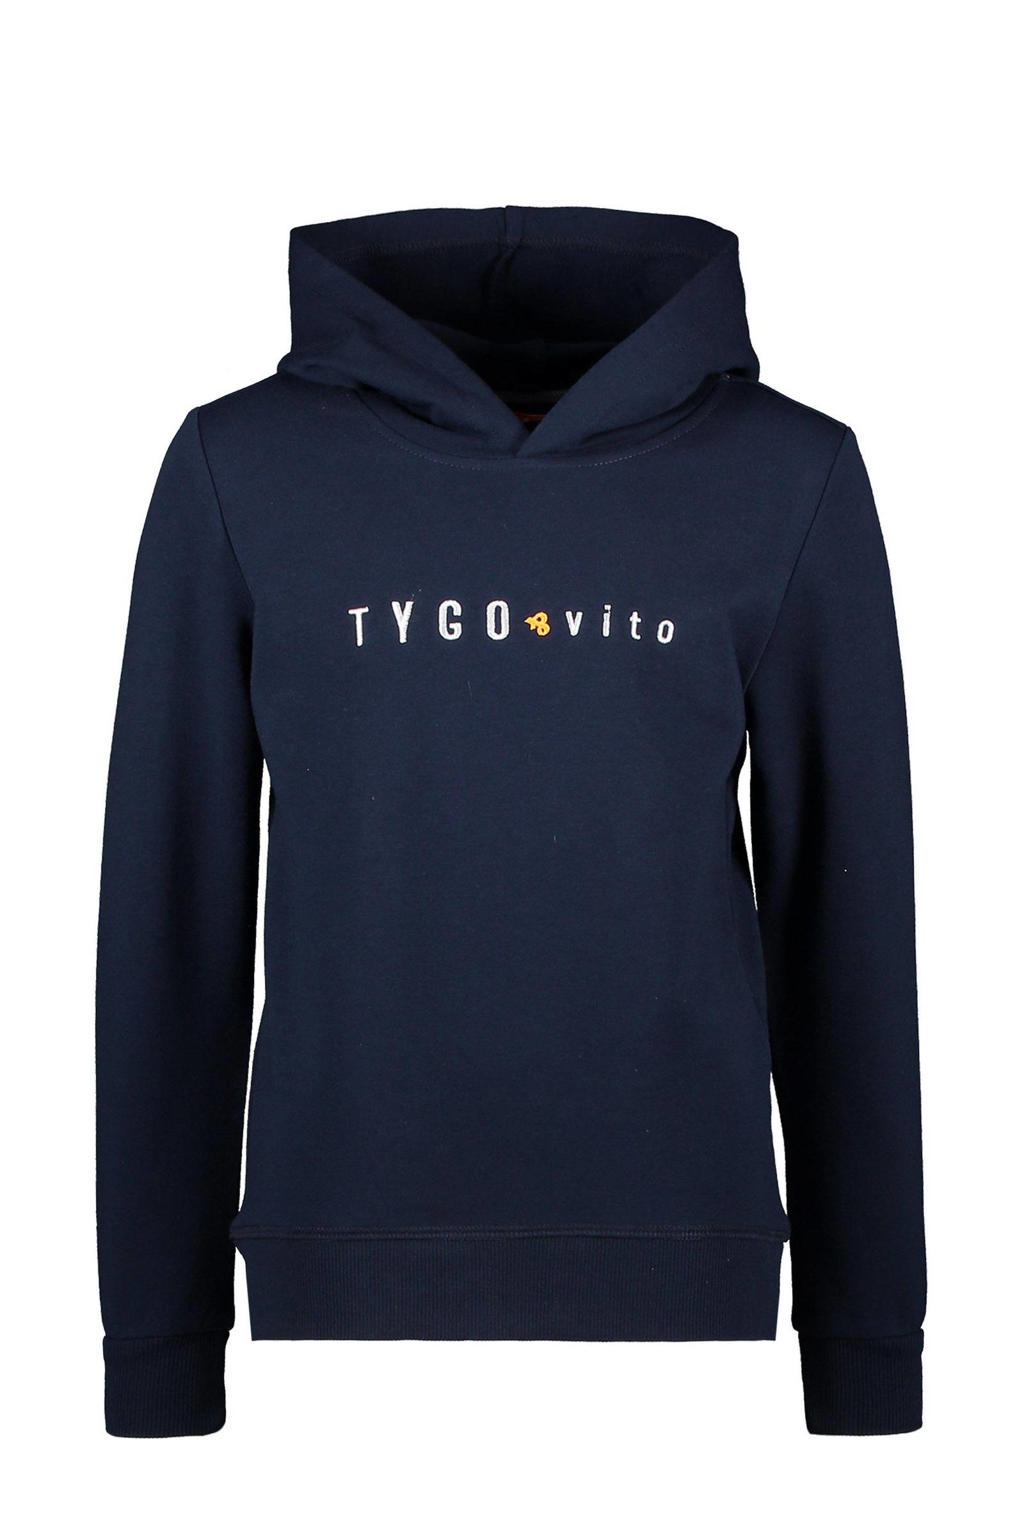 TYGO & vito hoodie met logo donkerblauw